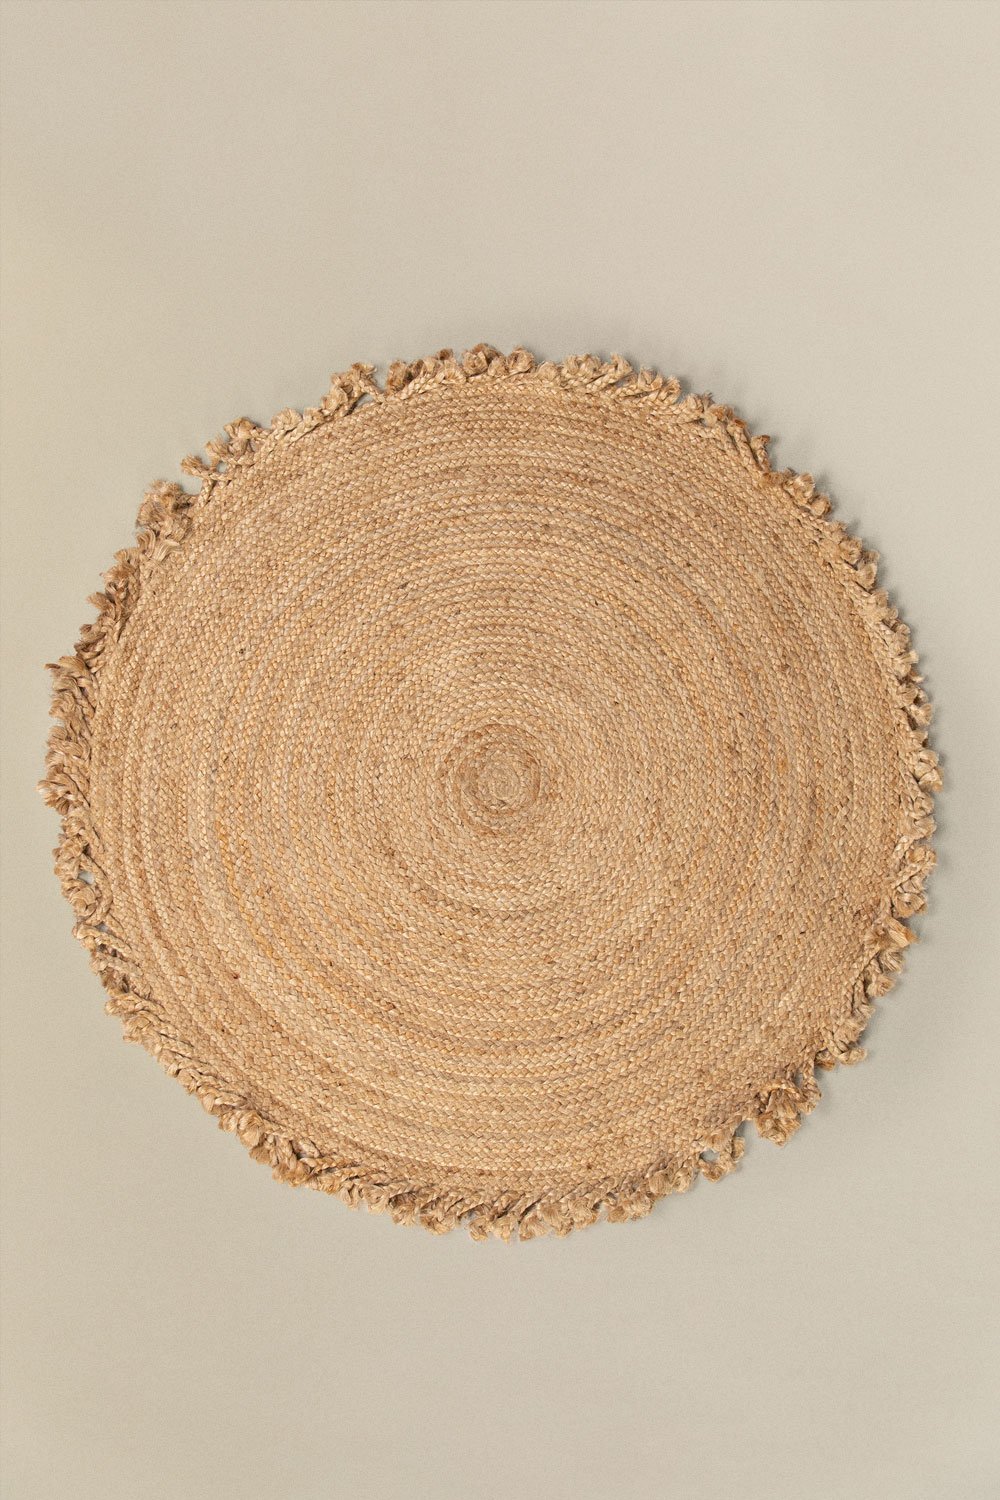 Tappeto rotondo in juta naturale Ondes, immagine della galleria 1